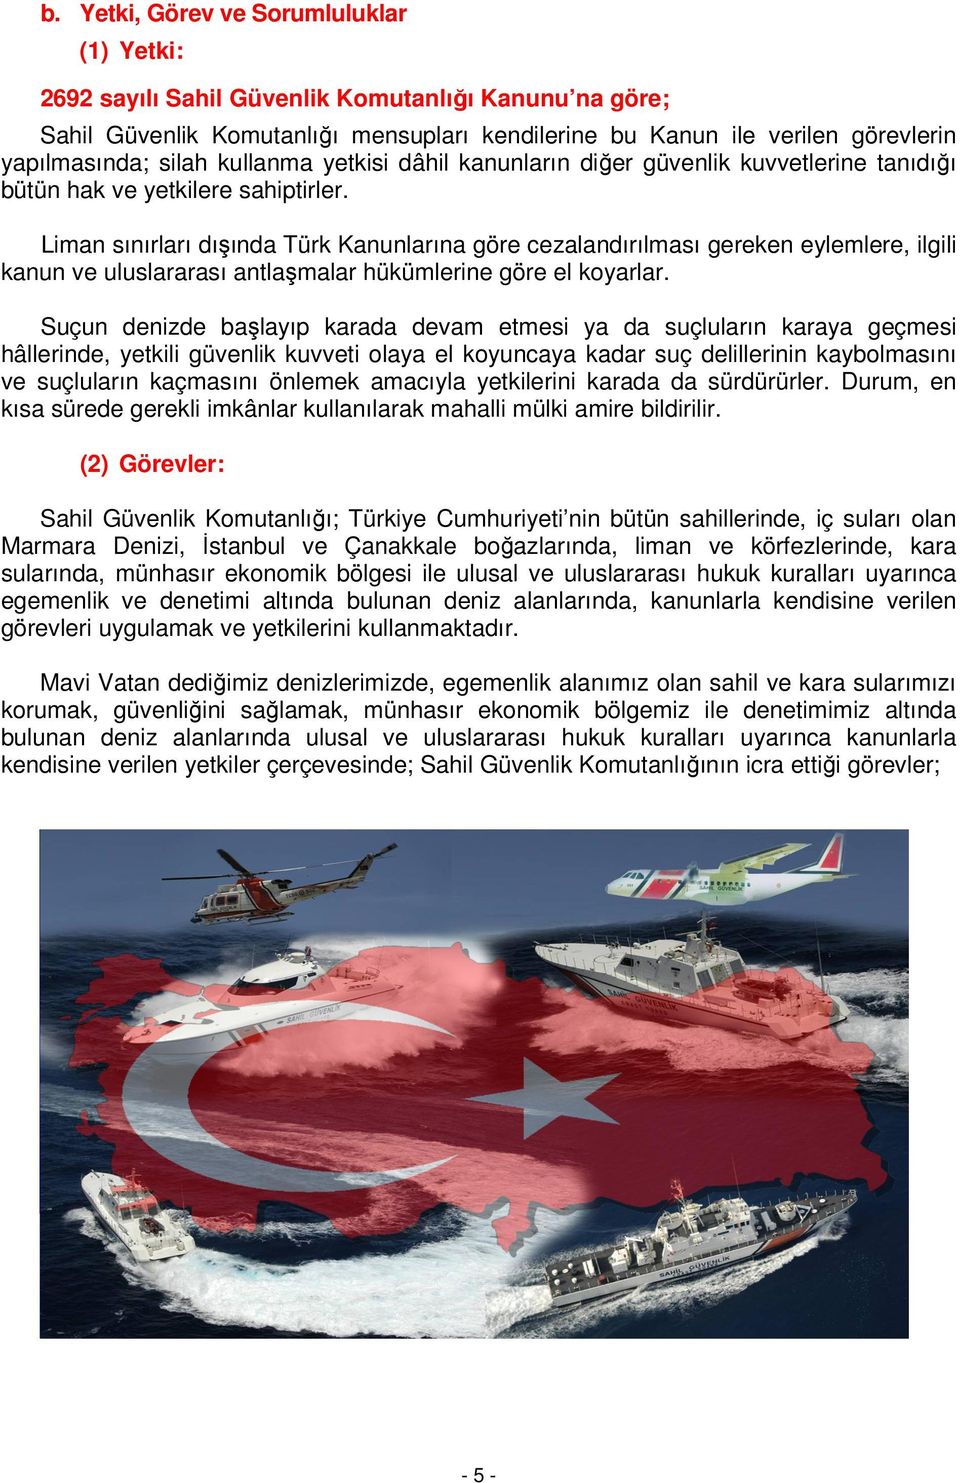 Liman sınırları dışında Türk Kanunlarına göre cezalandırılması gereken eylemlere, ilgili kanun ve uluslararası antlaşmalar hükümlerine göre el koyarlar.